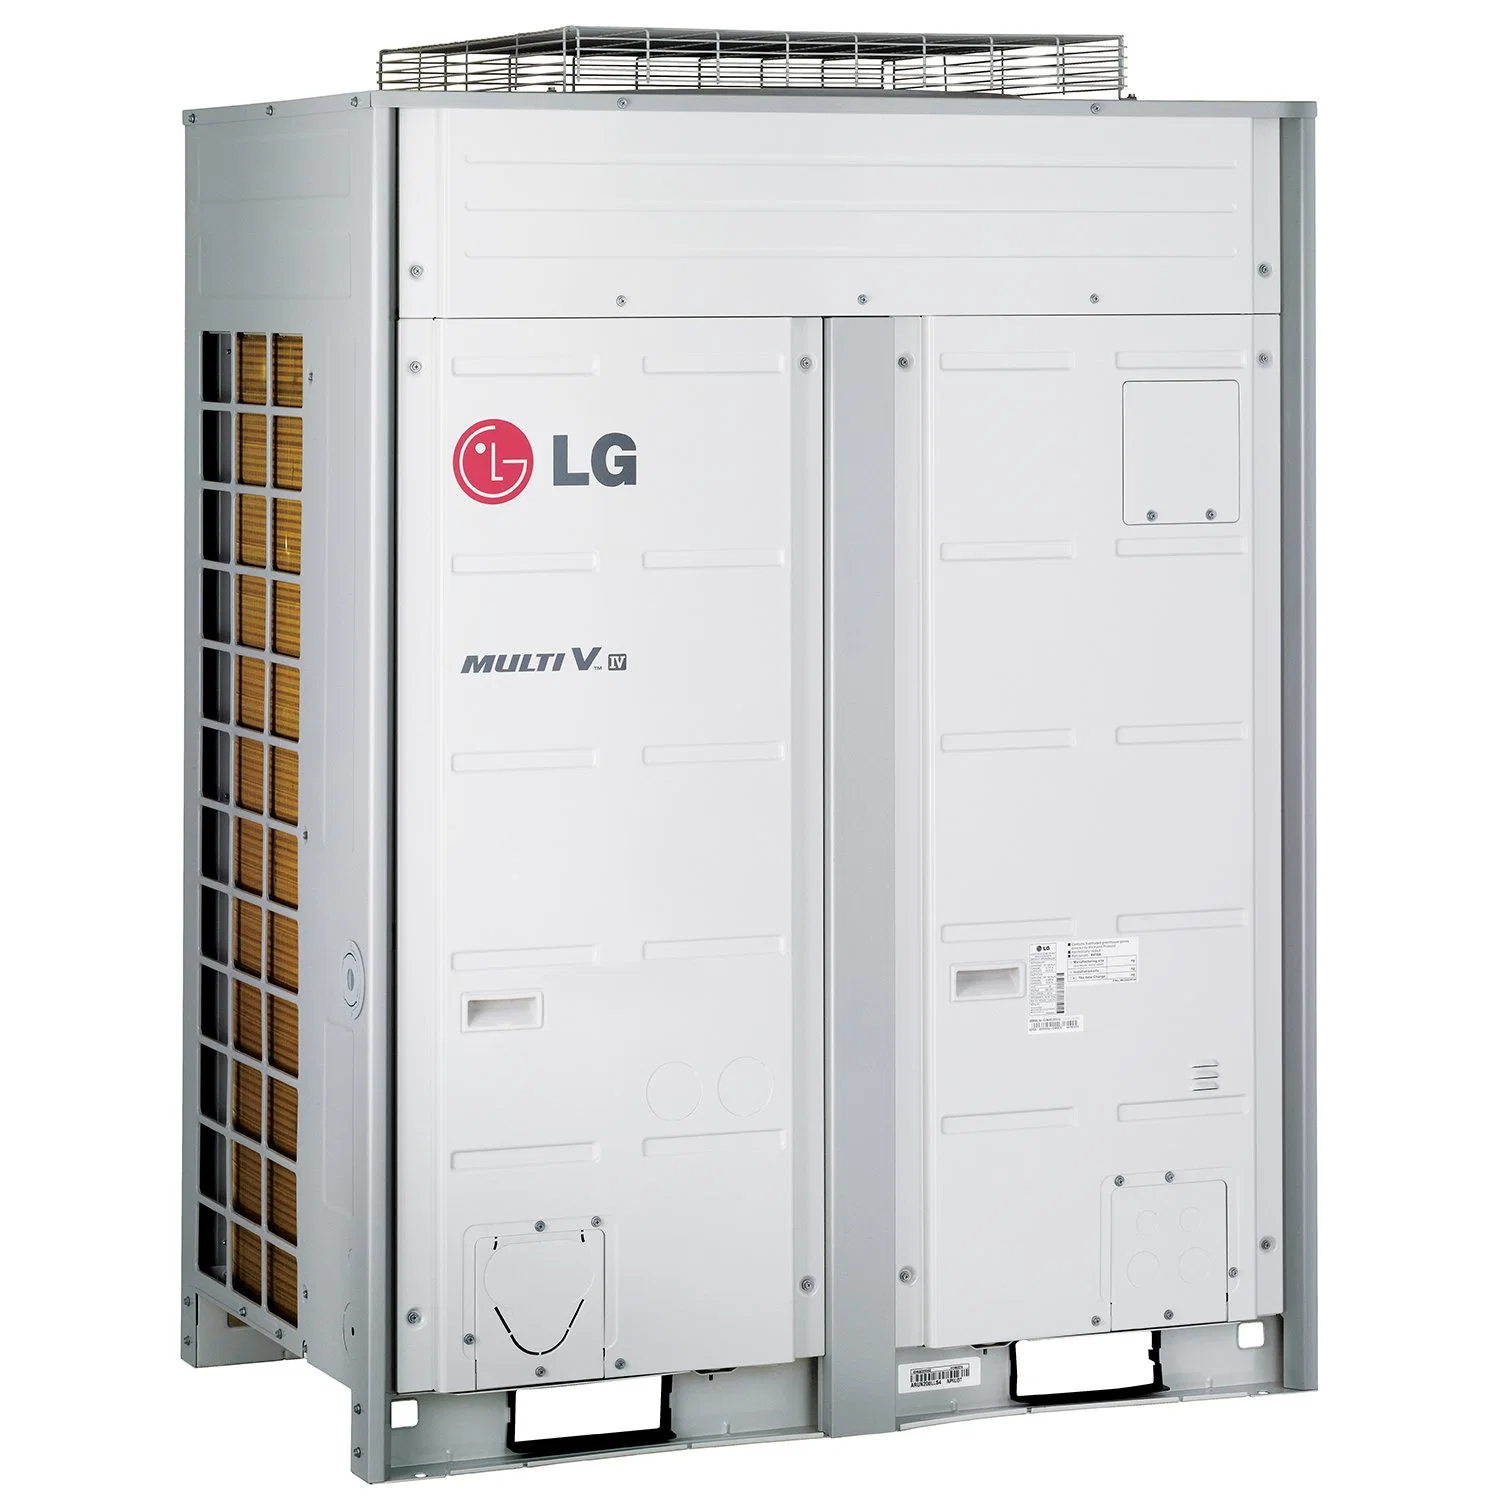 LG промышленных кондиционеров воздуха системы охлаждения Coller